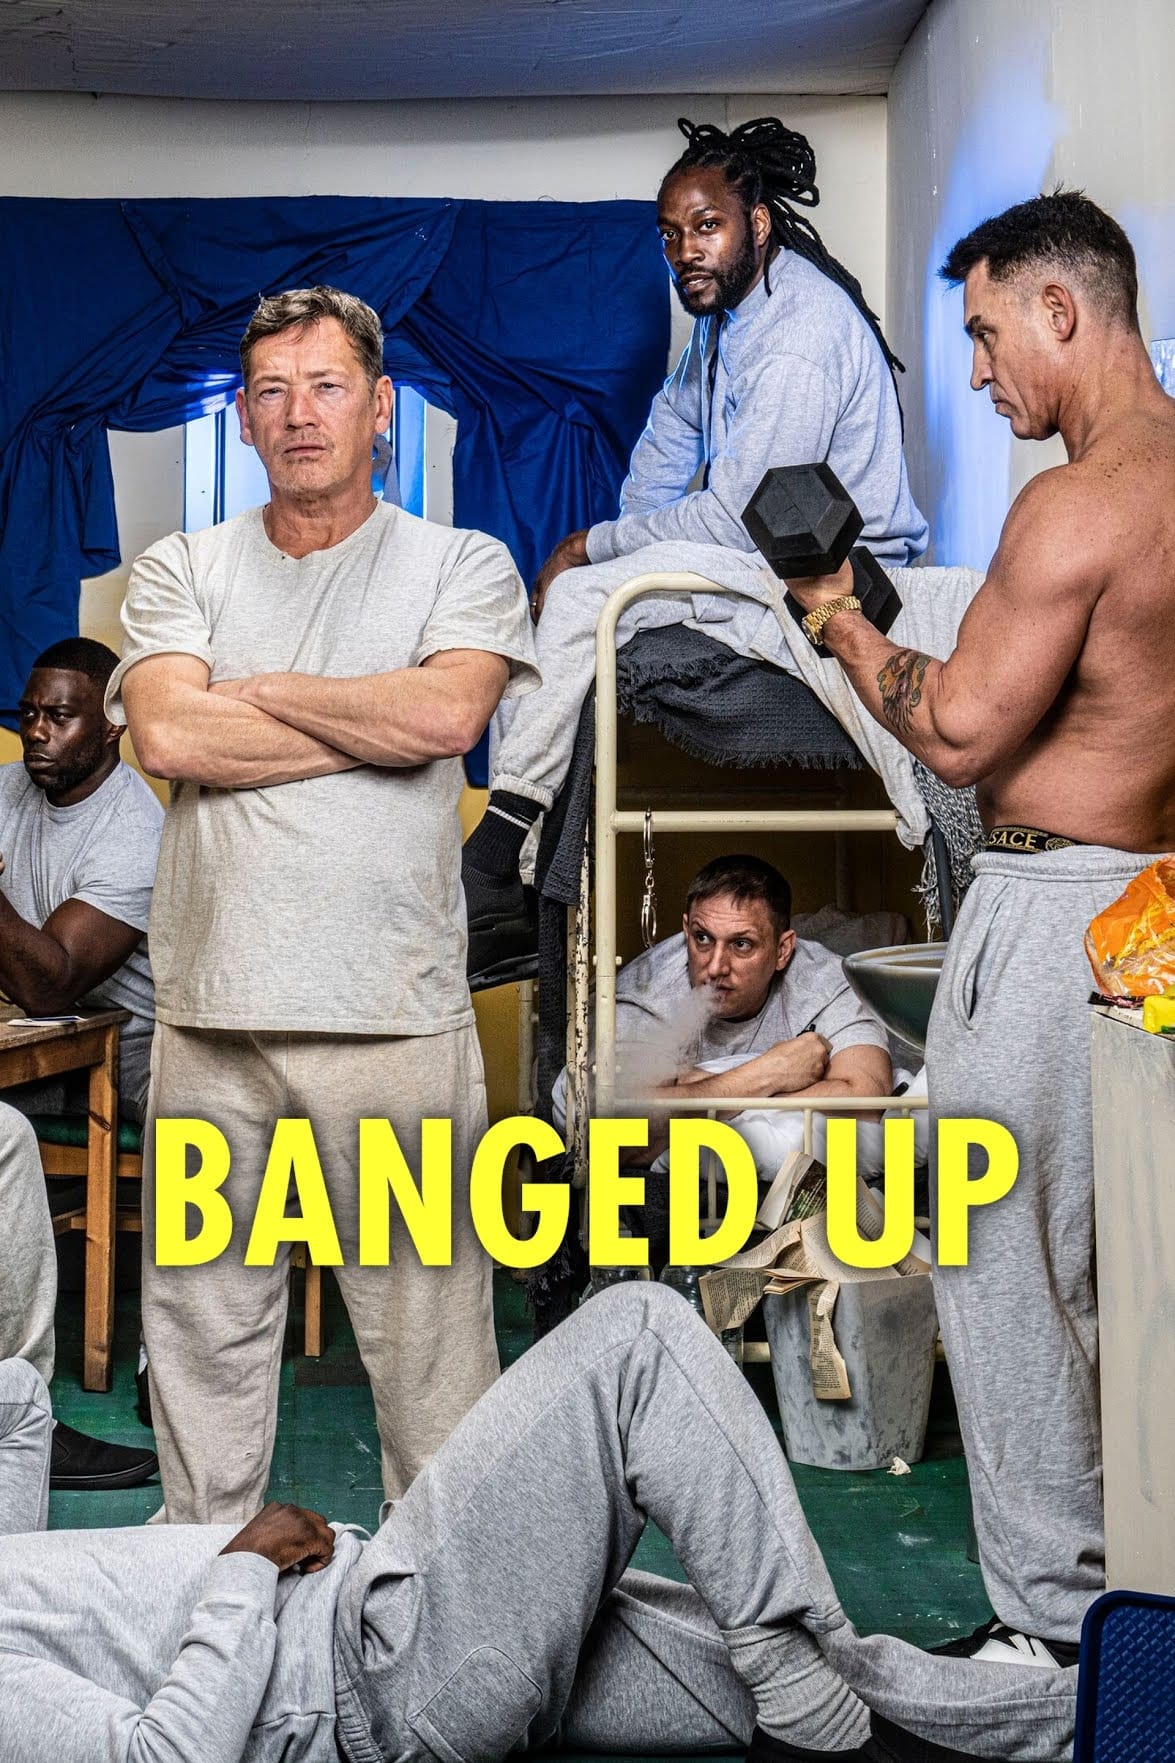 Banged Up: Stars Behind Bars